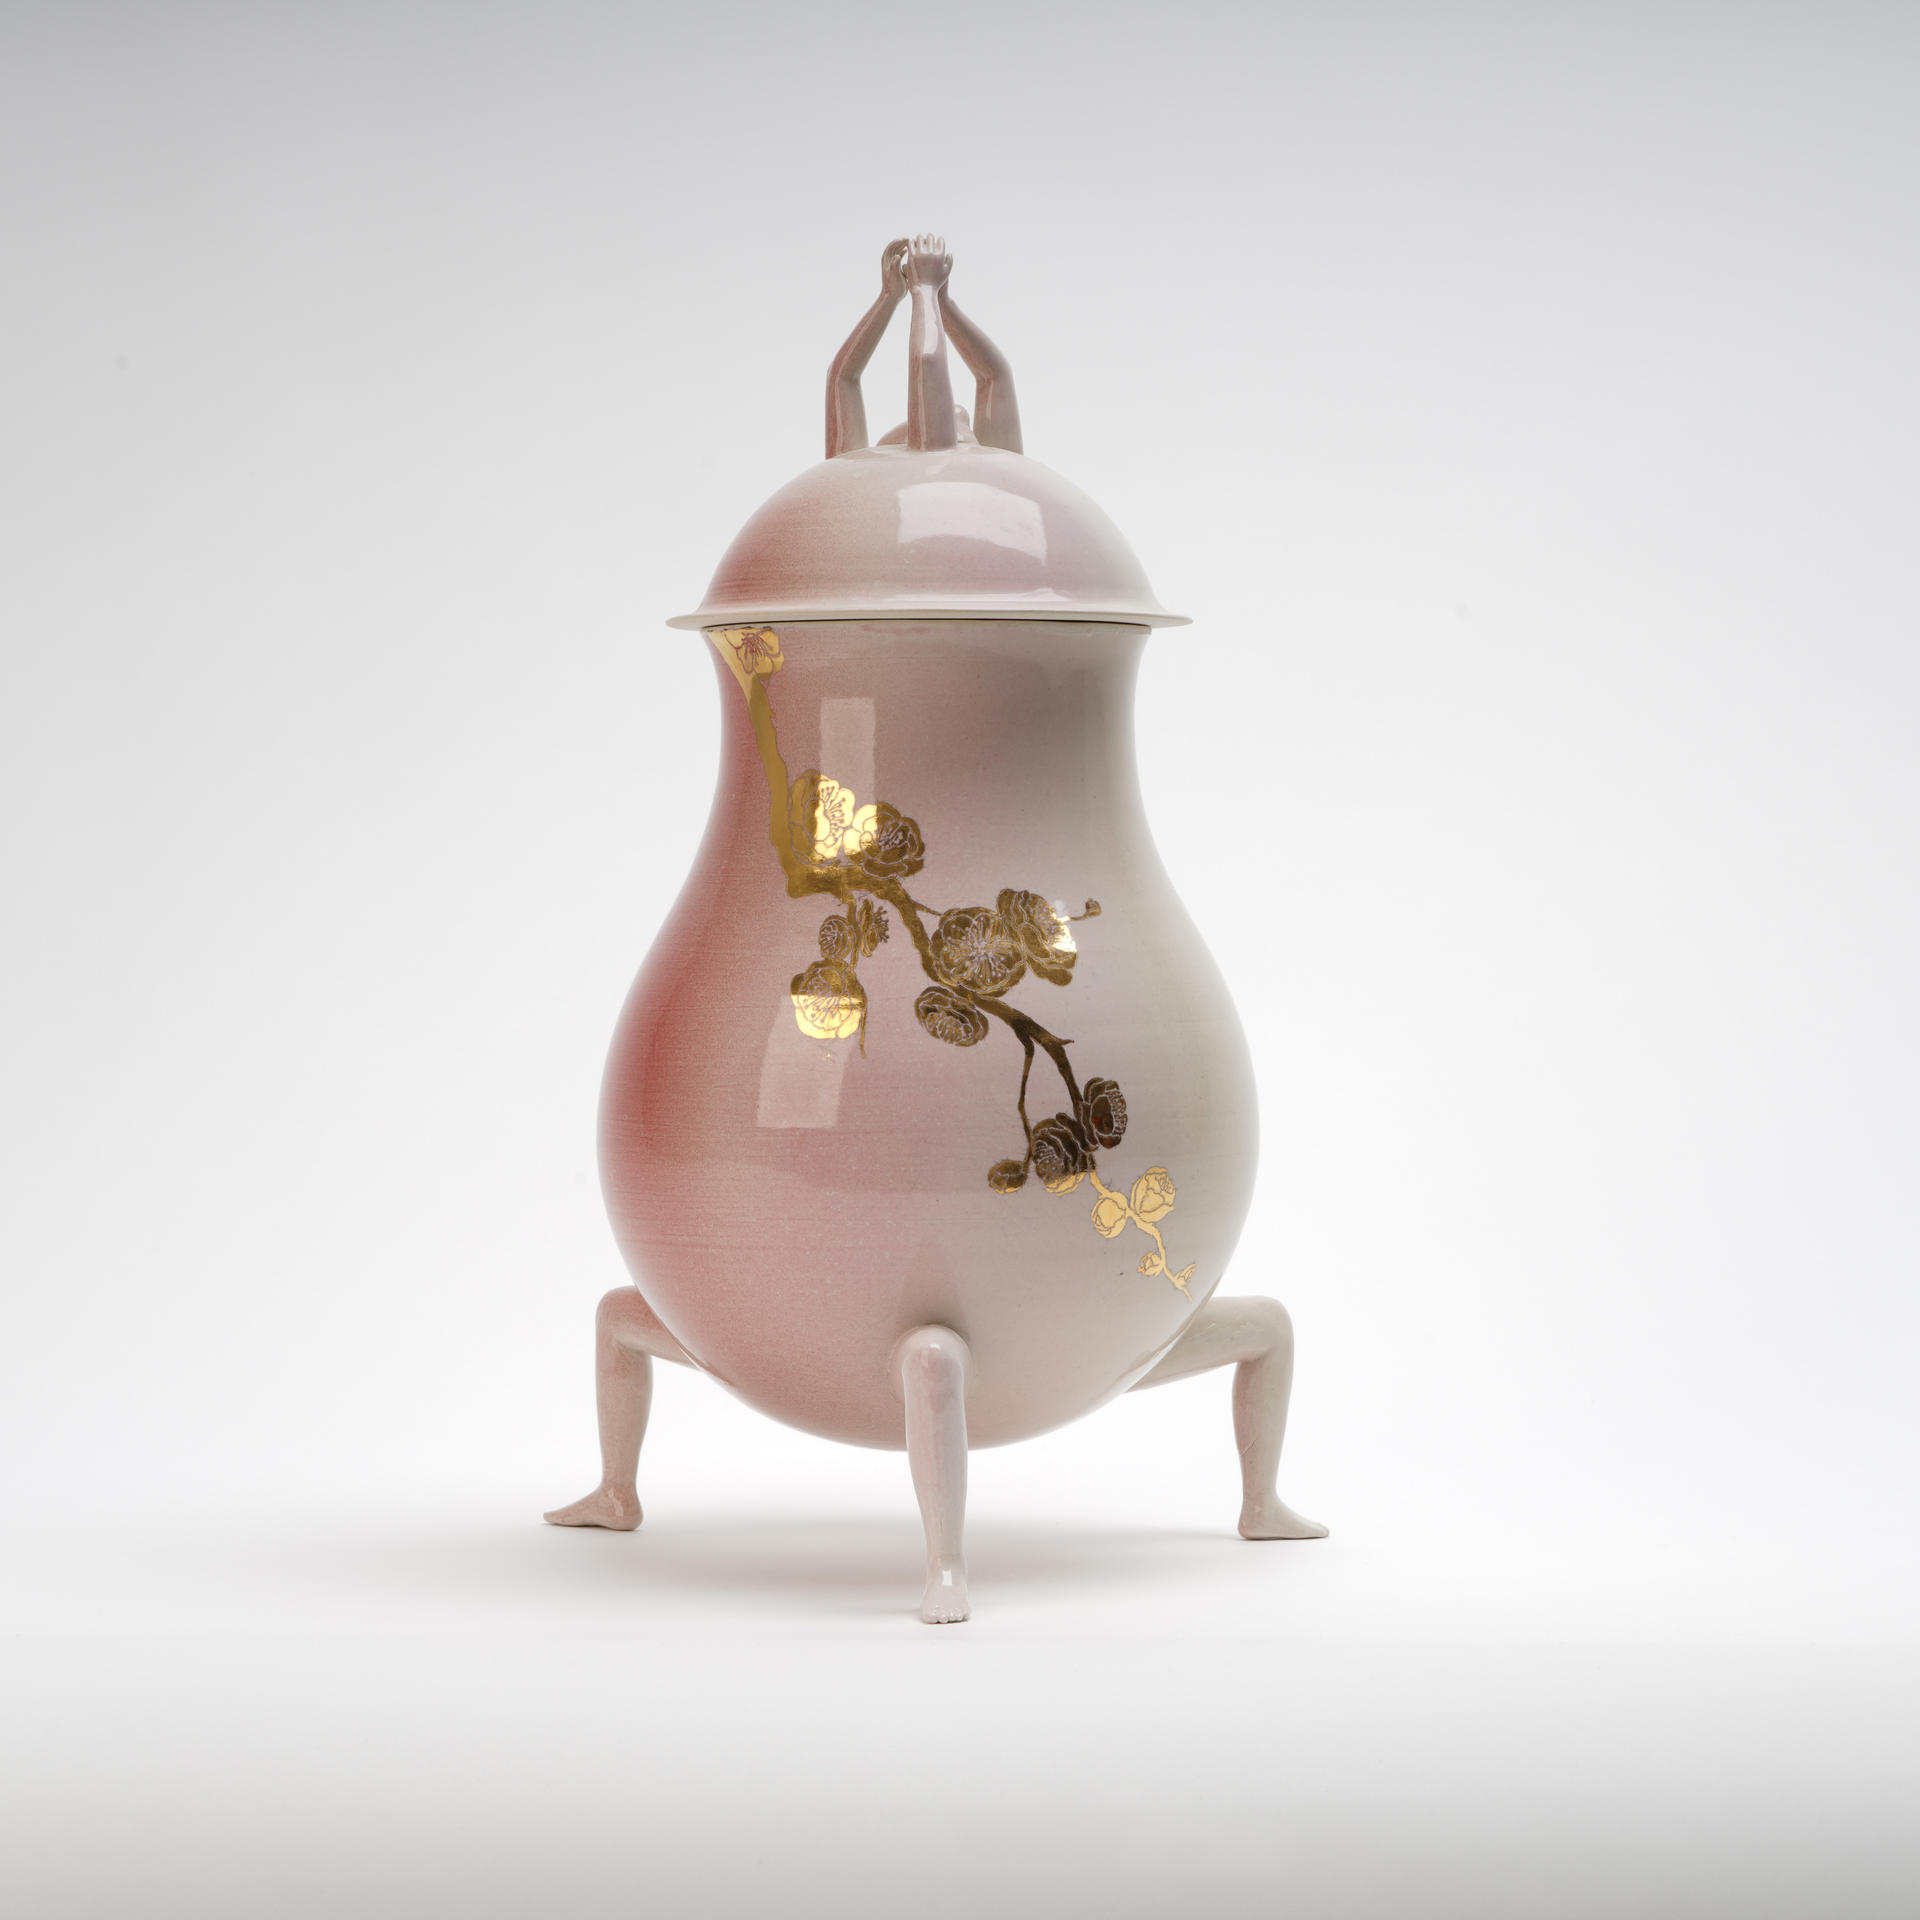 The luster plum vase